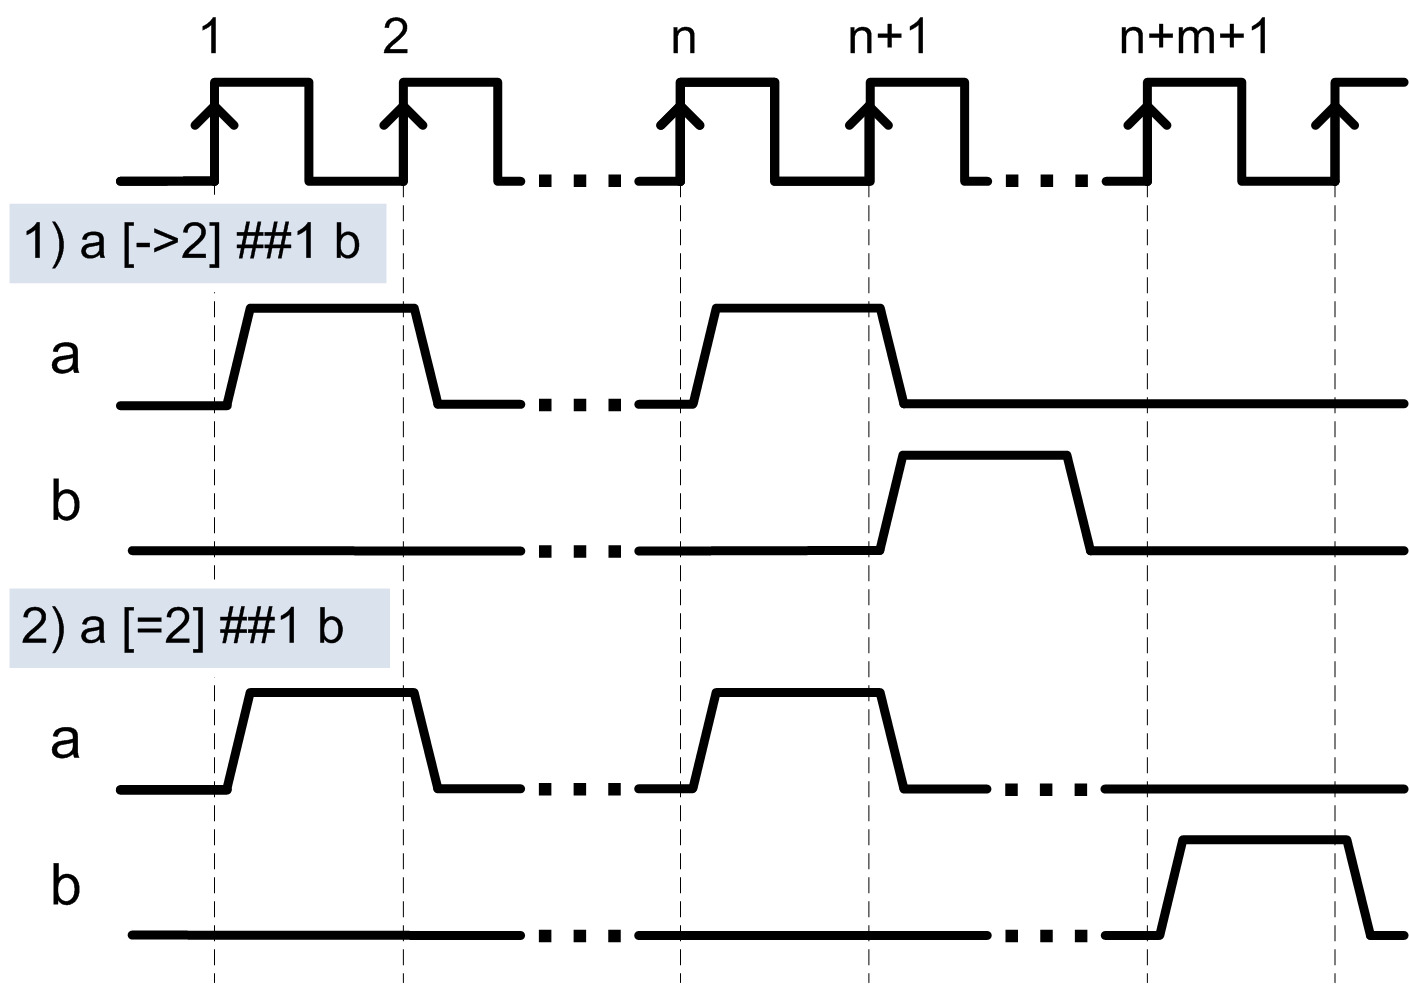 Рис. 7. 1) Сигнал «b» установится в ‘1’ на следующем такте после 2-го повторения «a». 
	2) Сигнал «b» установится в ‘1’ не раньше, чем сигнал «a» повторится 2 раза и примет значение ‘0’.